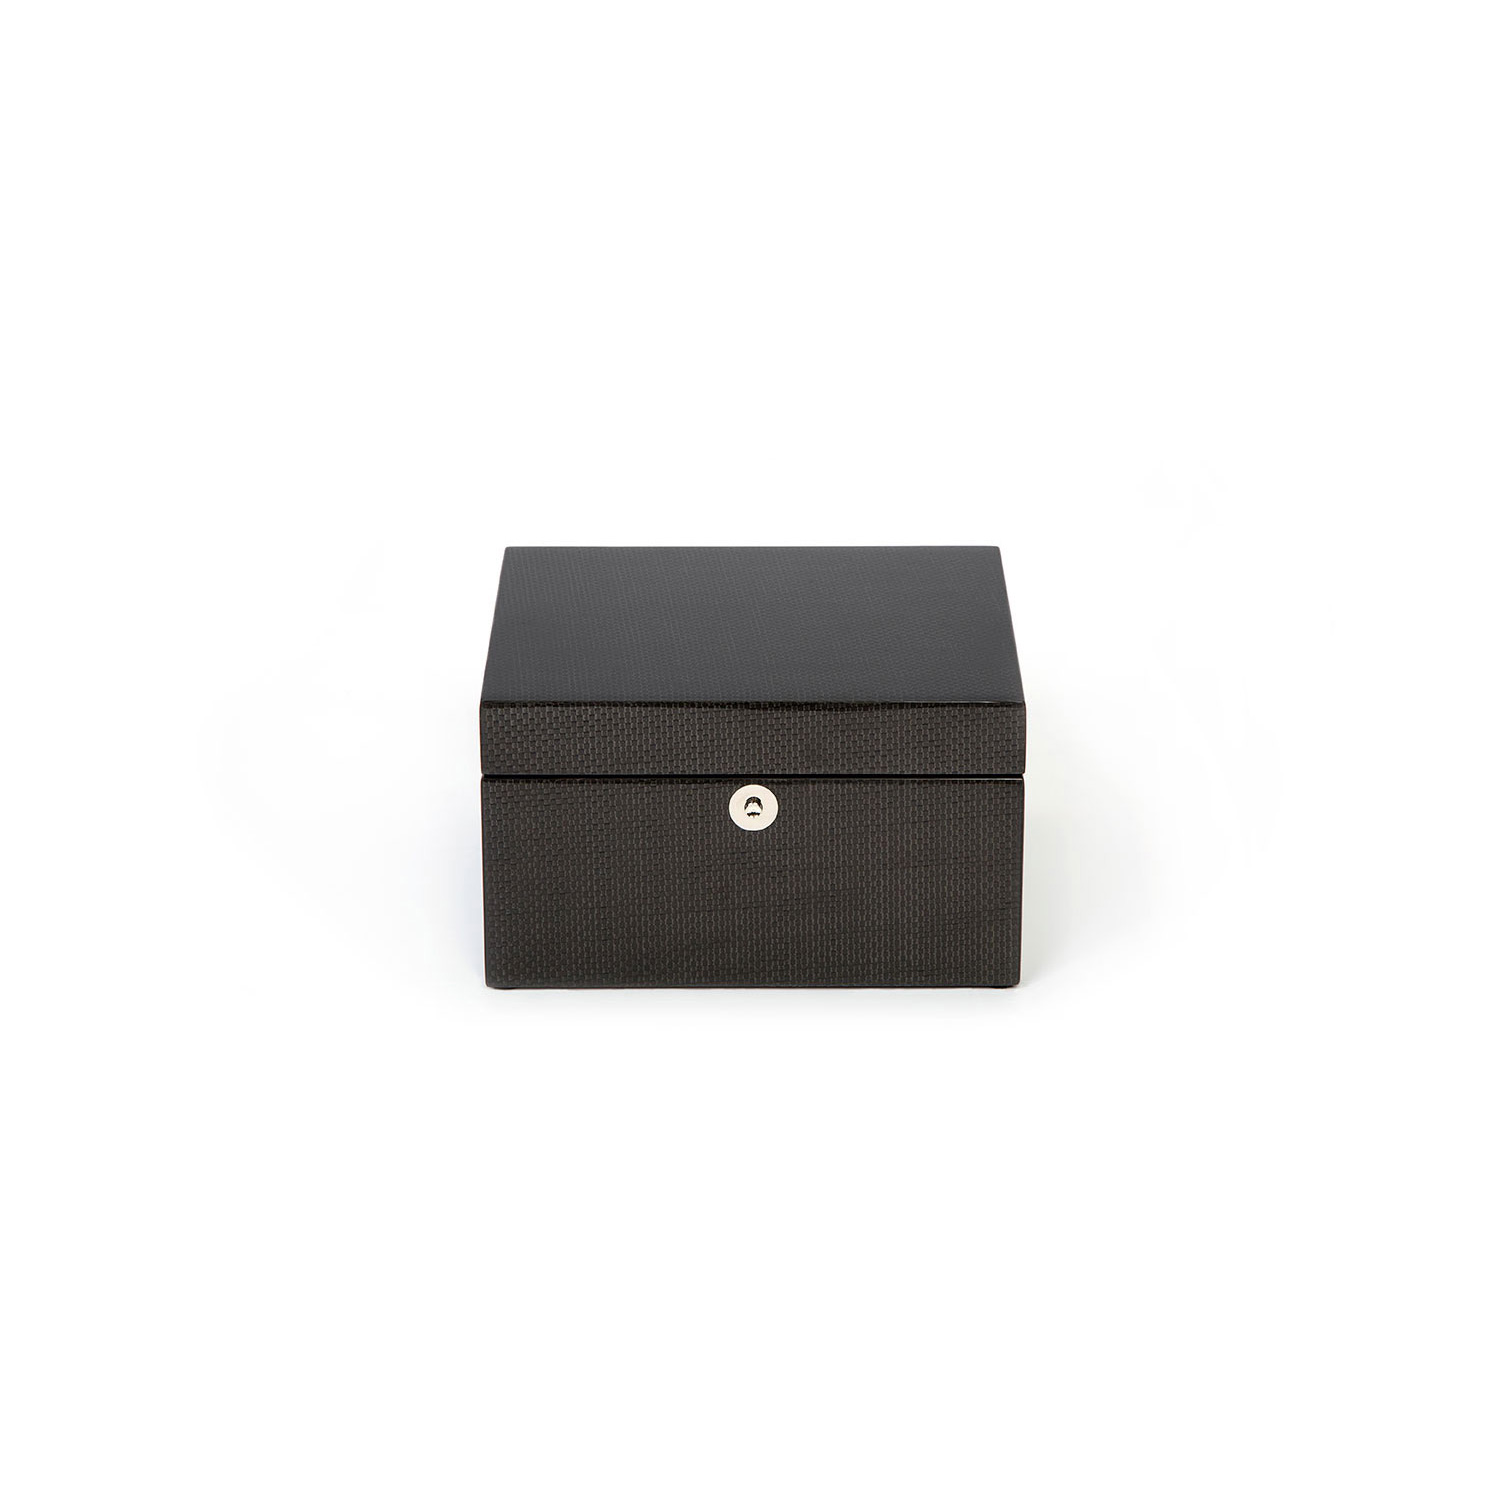 Jewelry box with tray Roger Line - La Bottega delle Arti